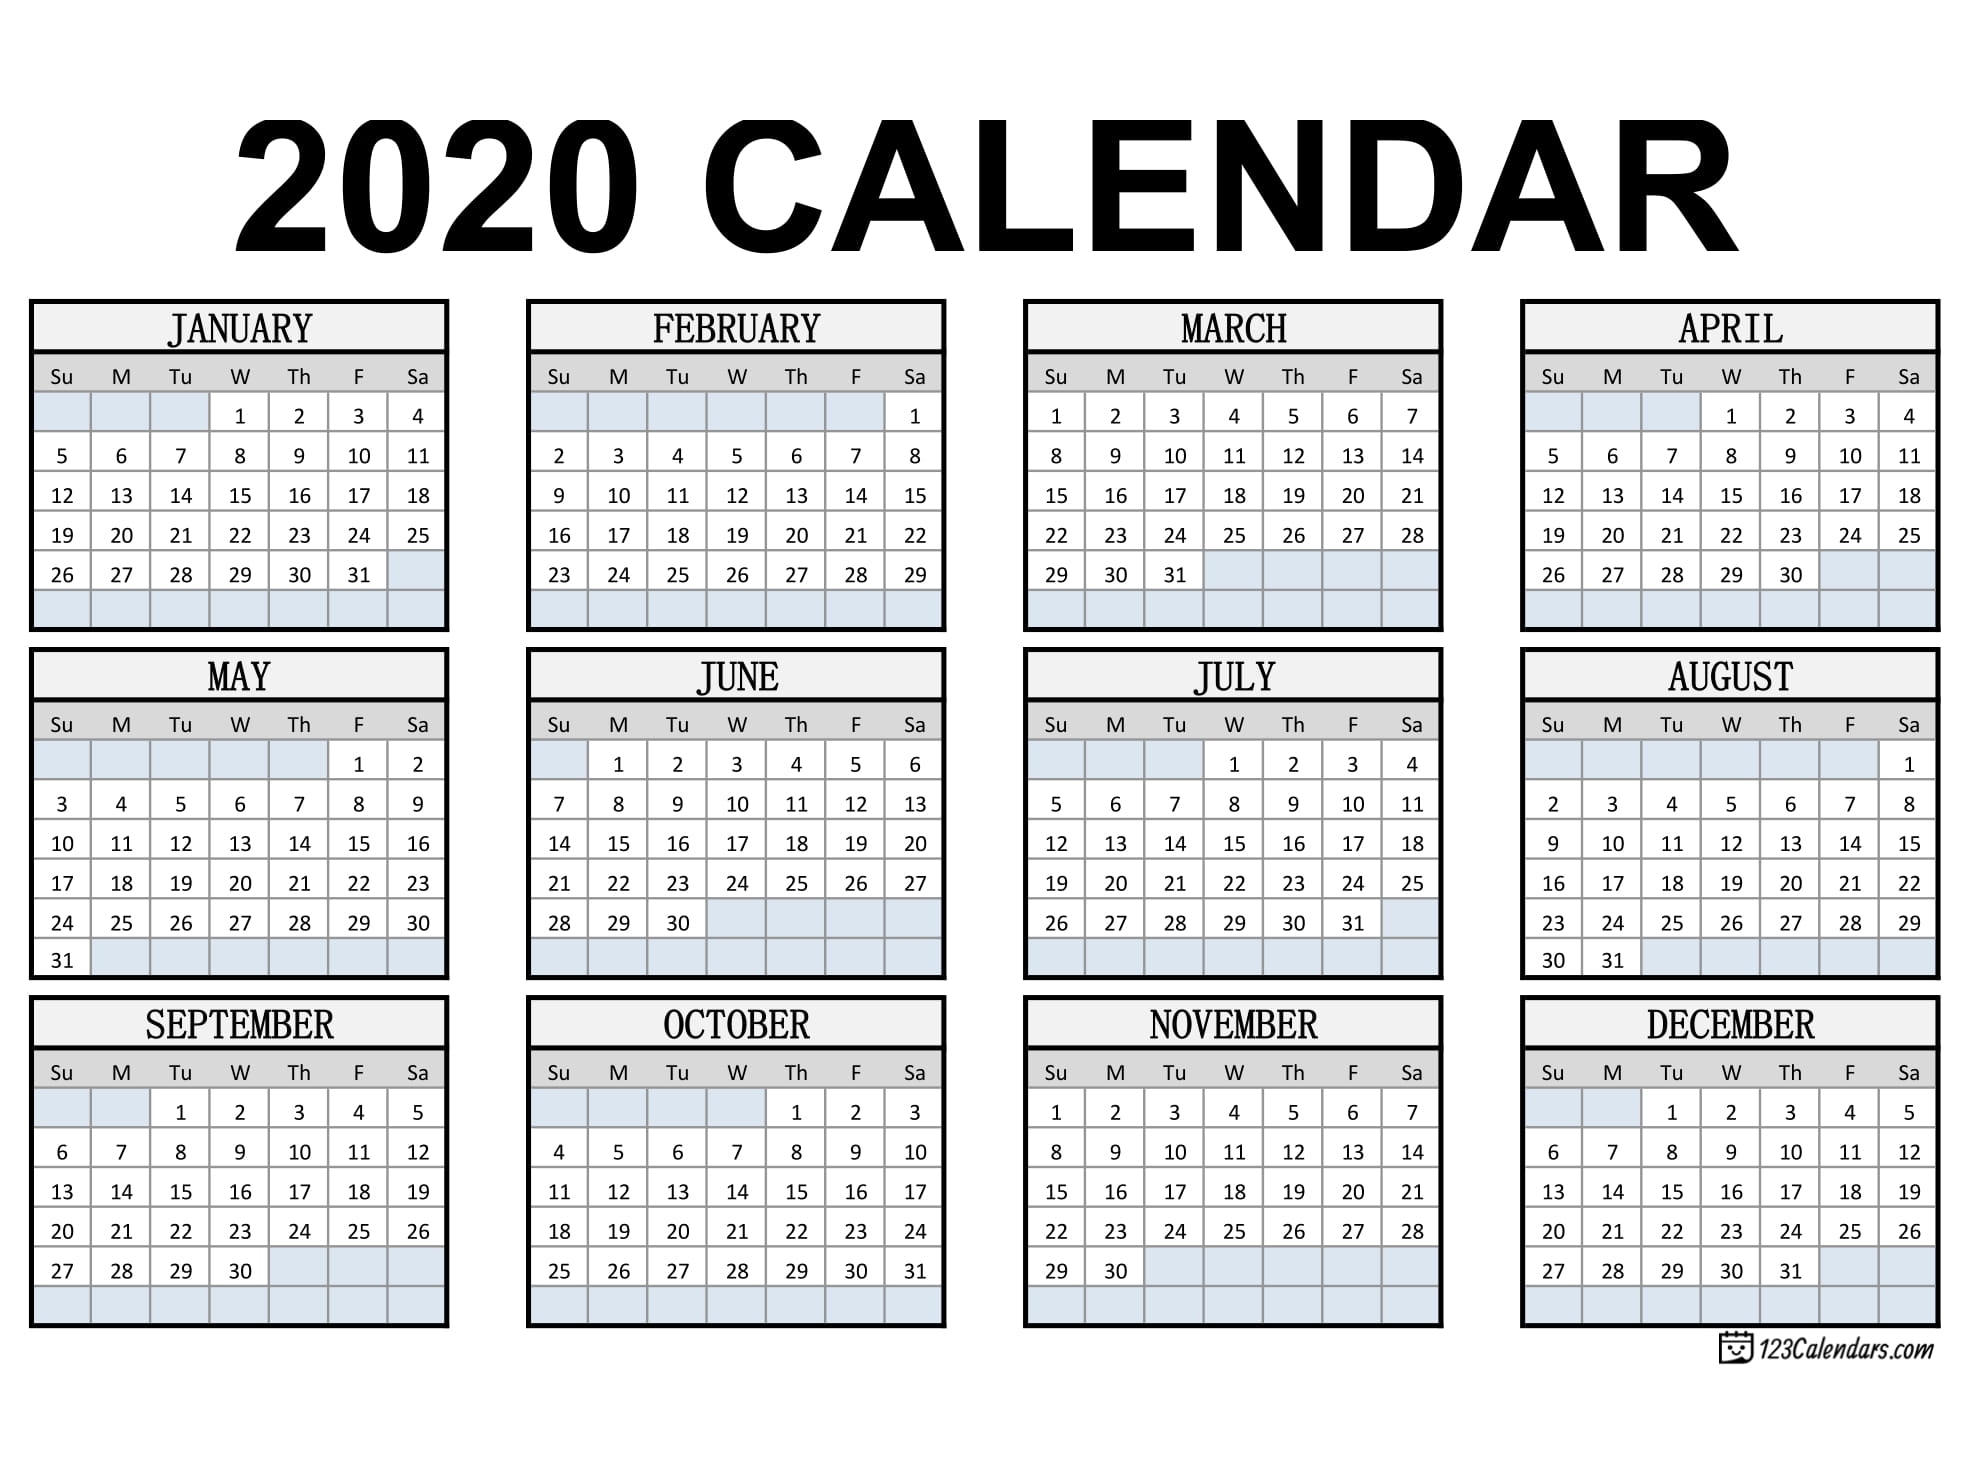 Free Printable 2020 Calendar | 123Calendars for 2020 Pocket Size Calendar Free